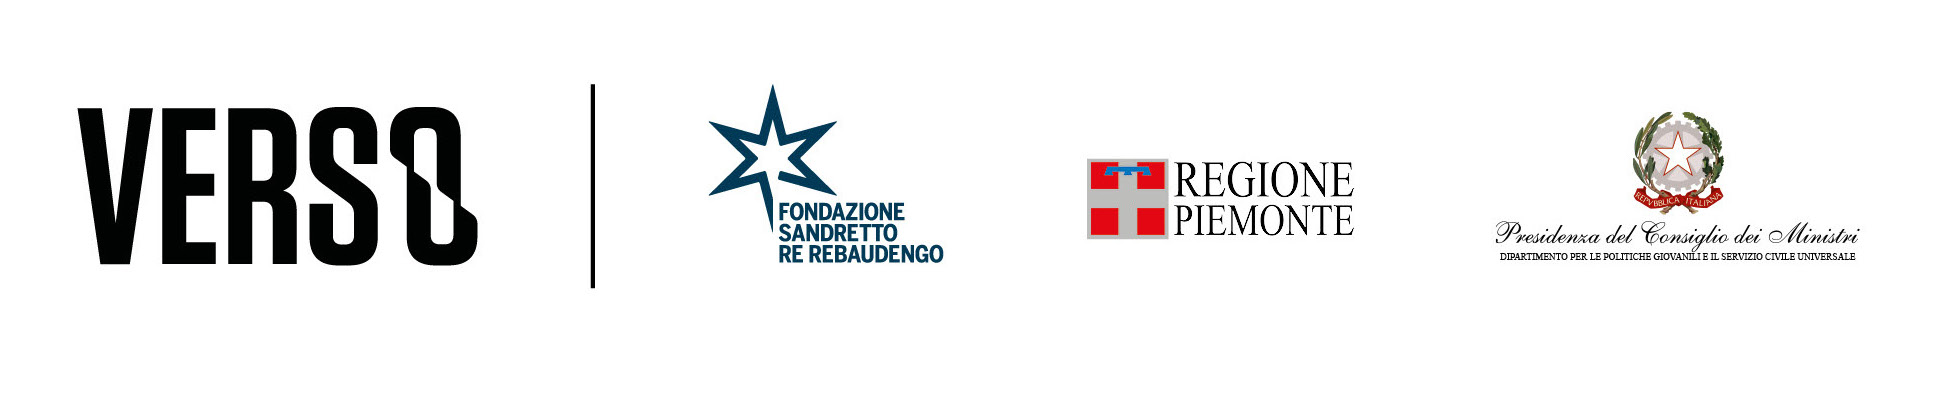 Projects – Fondazione Sandretto Re Rebaudengo